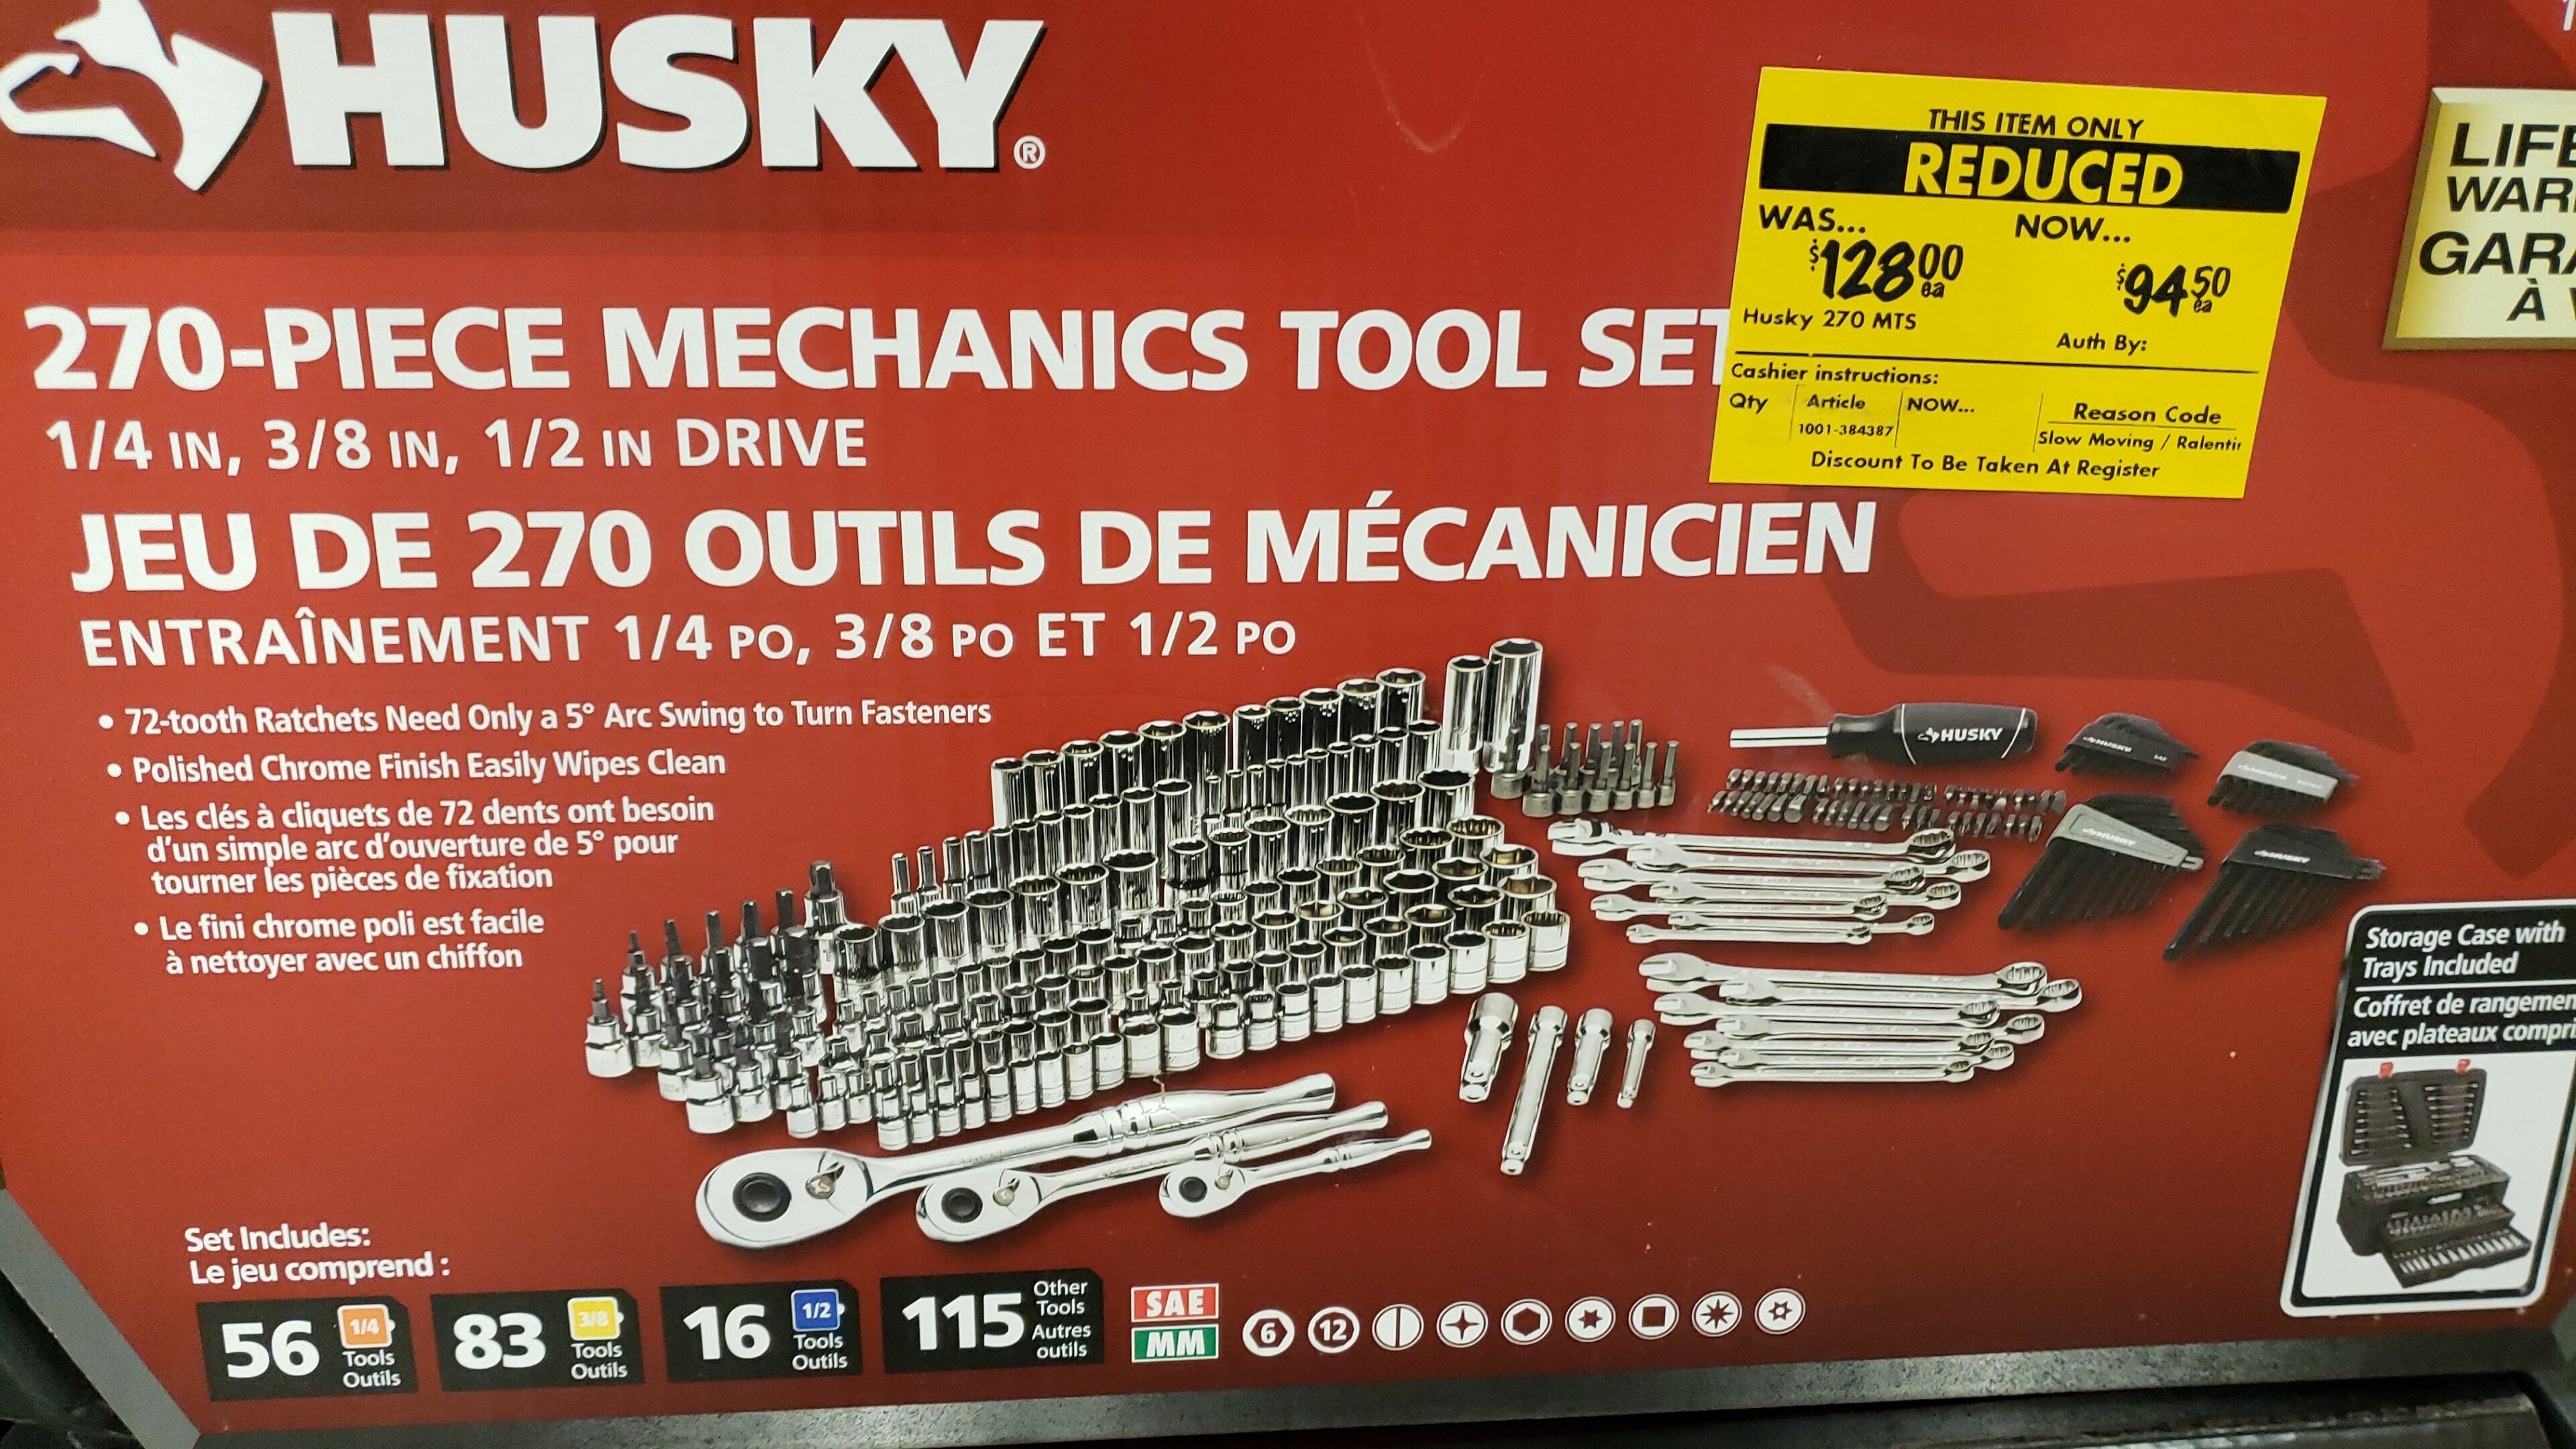 Home Depot] YMMV - $94.40 - Husky 270 Piece Mechanics Tool Tool set -  RedFlagDeals.com Forums